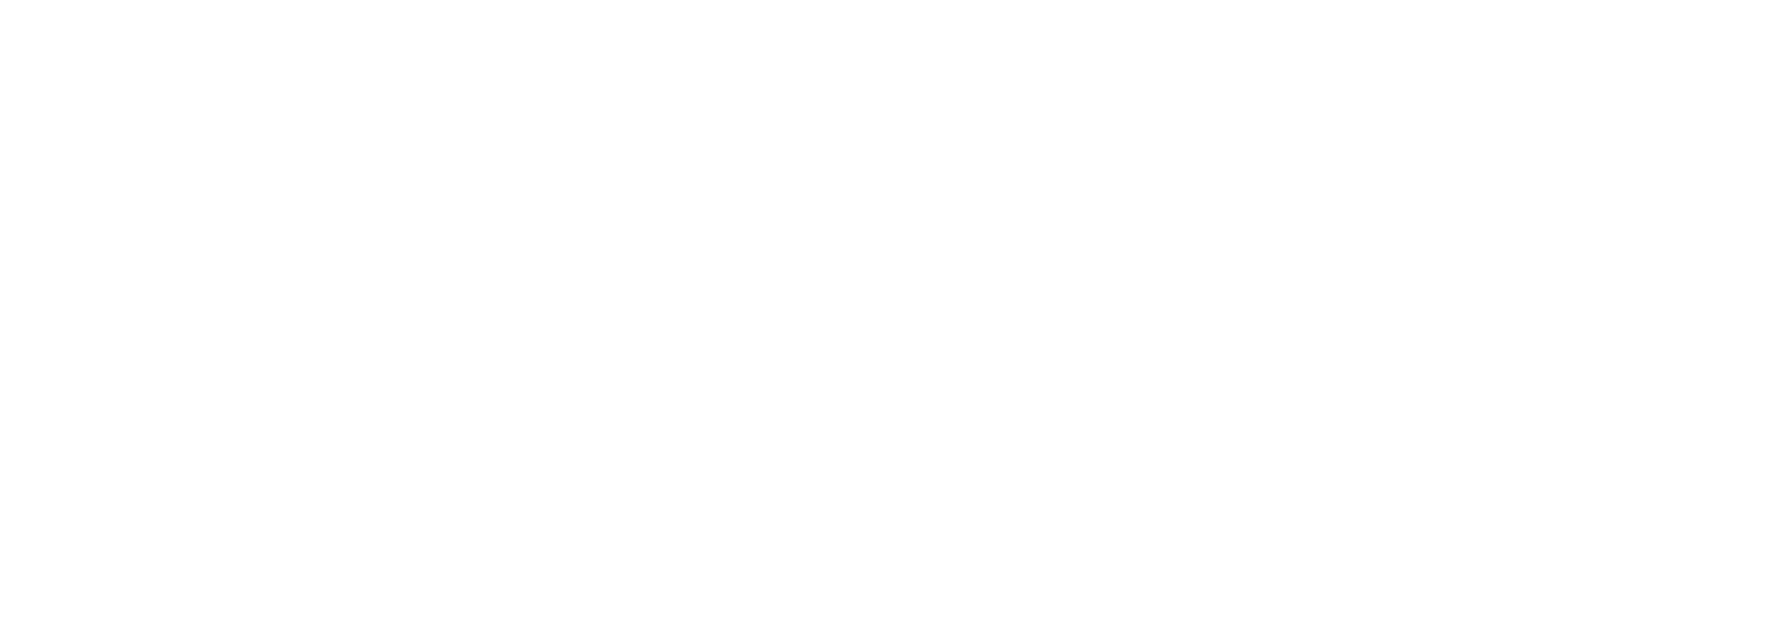 Beignets de courgettes et feta logo